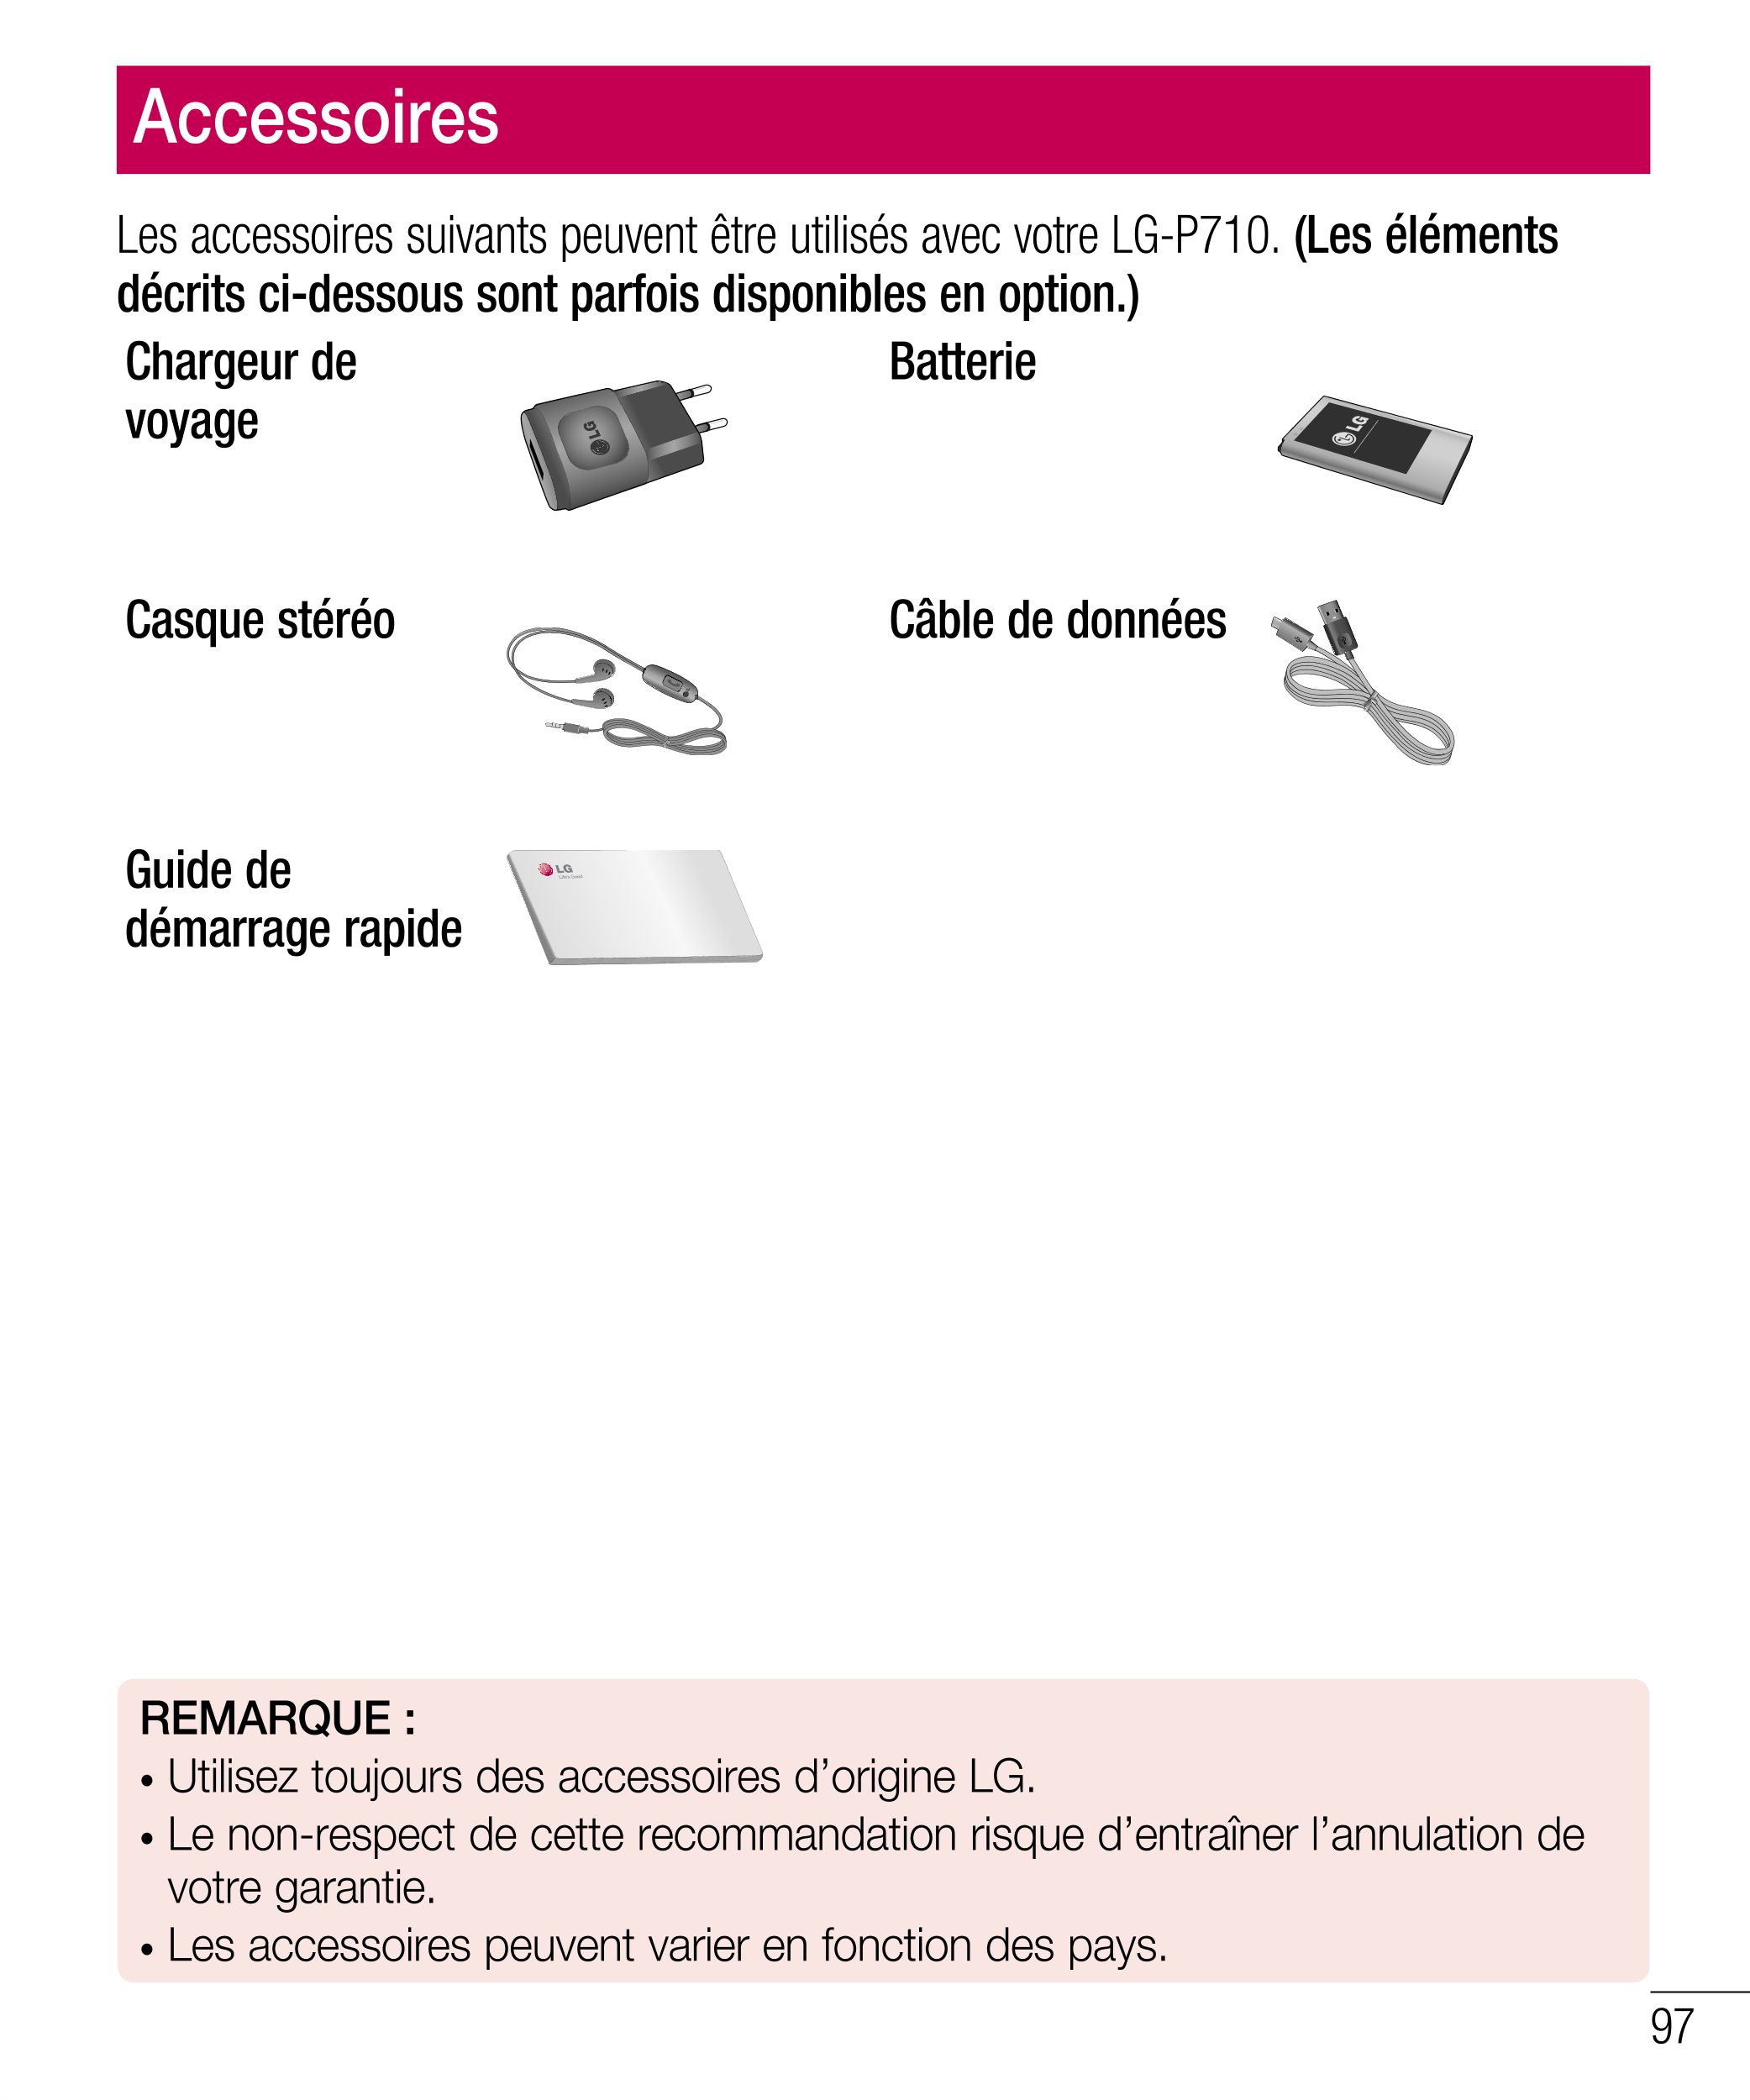 Accessoires
Les accessoires suivants peuvent être utilisés avec votre LG-P710.  (Les éléments 
décrits ci-dessous sont parfois d